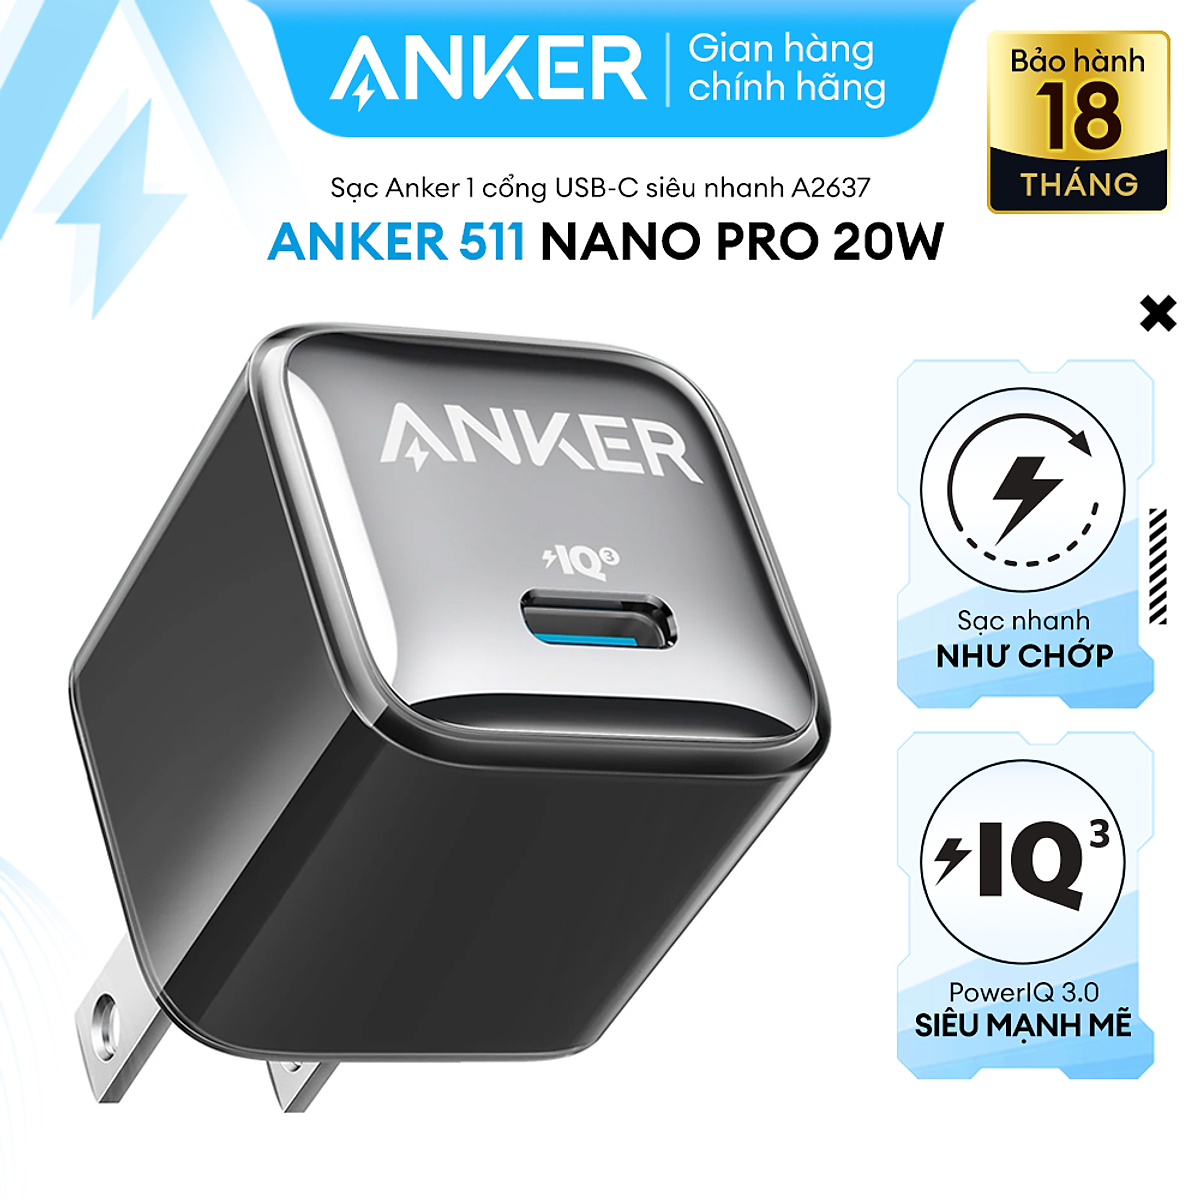 Mua Sạc ANKER 511 Nano Pro 20W A2637 1 cổng USB-C PiQ  tương thích PD -  A2637 - Hỗ trợ sạc nhanh 20W cho iPhone 13 trở lên. - Đen tại ANKER  OFFICIAL STORE